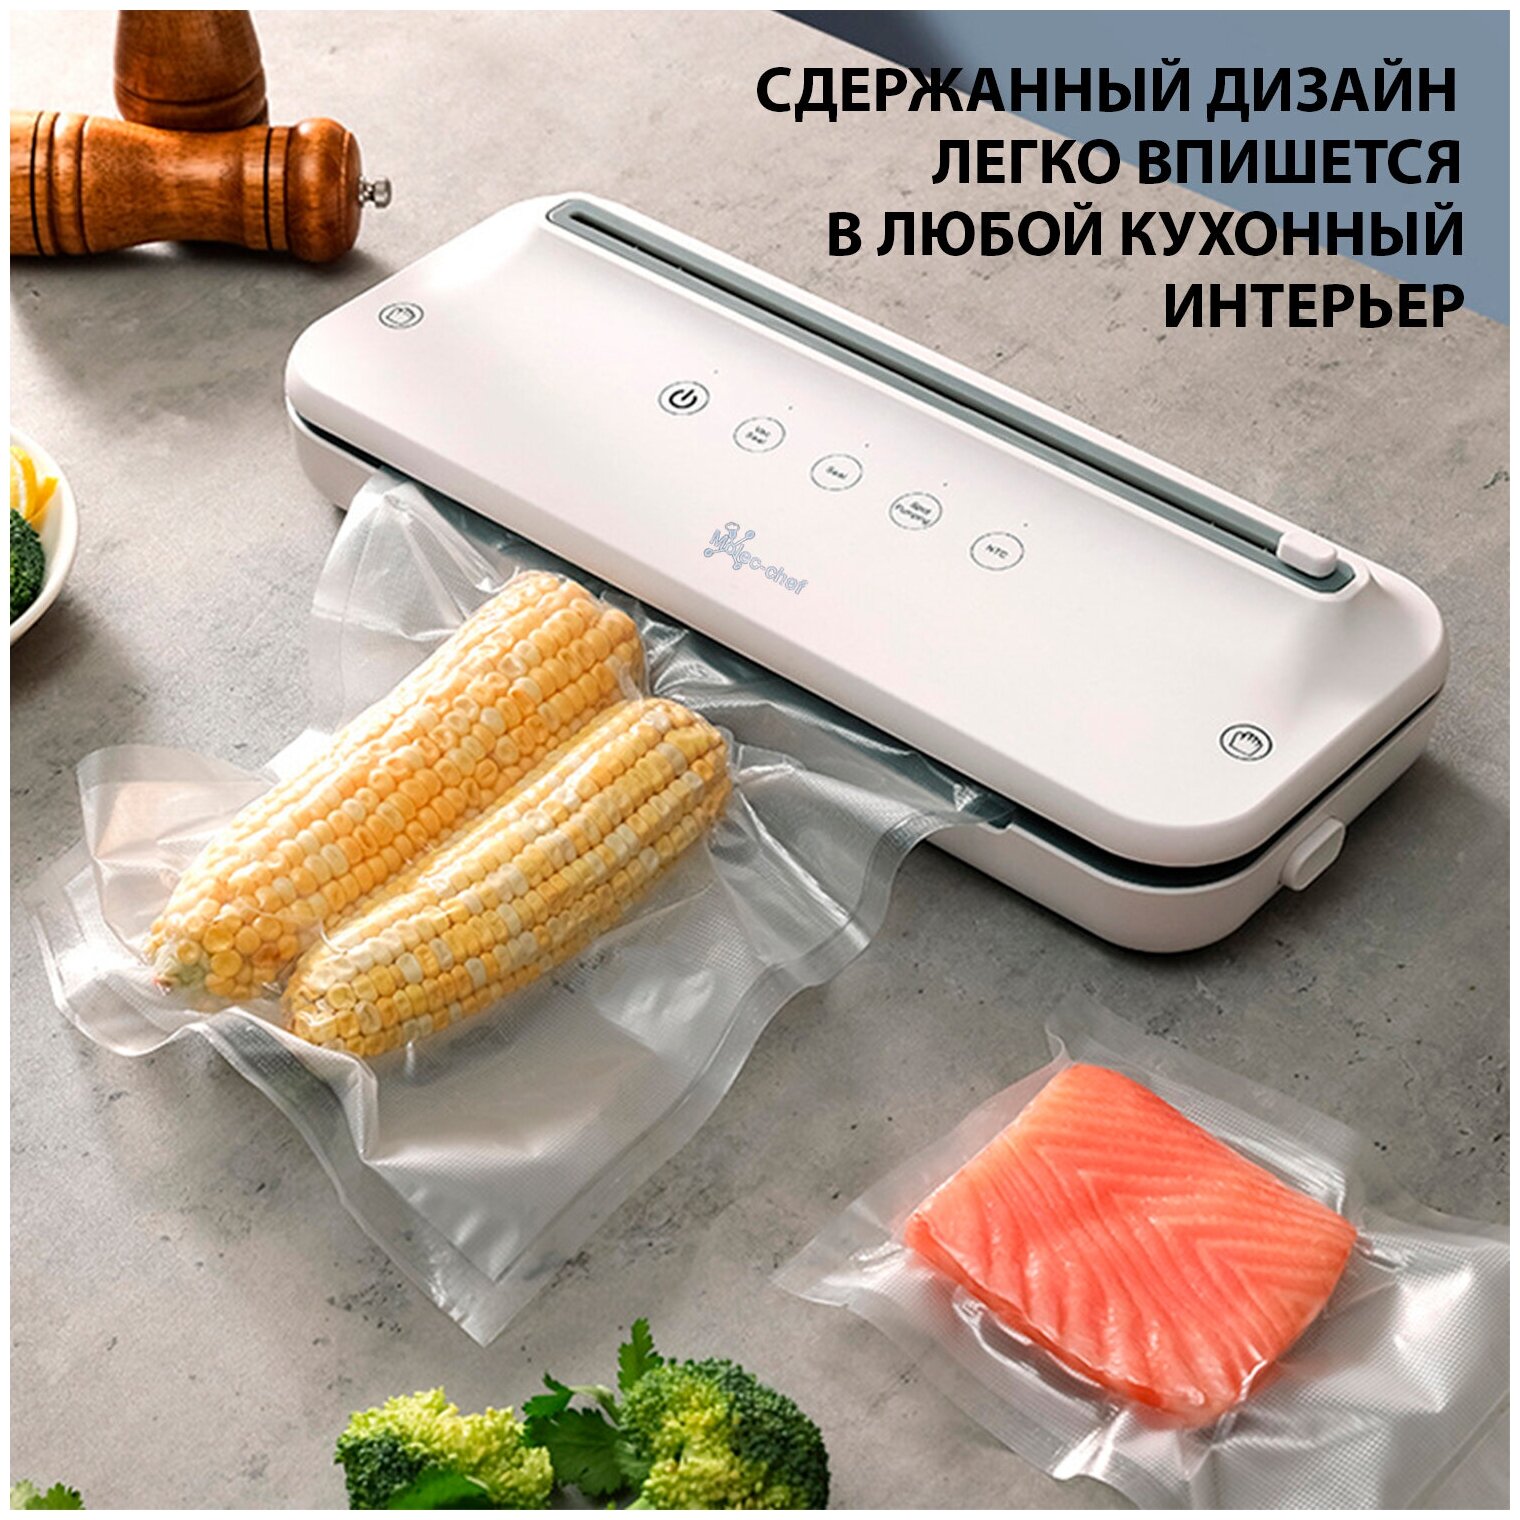 Вакуумный упаковщик белый для продуктов Moleck-chef с автоматической системой вакуумирования - фотография № 3